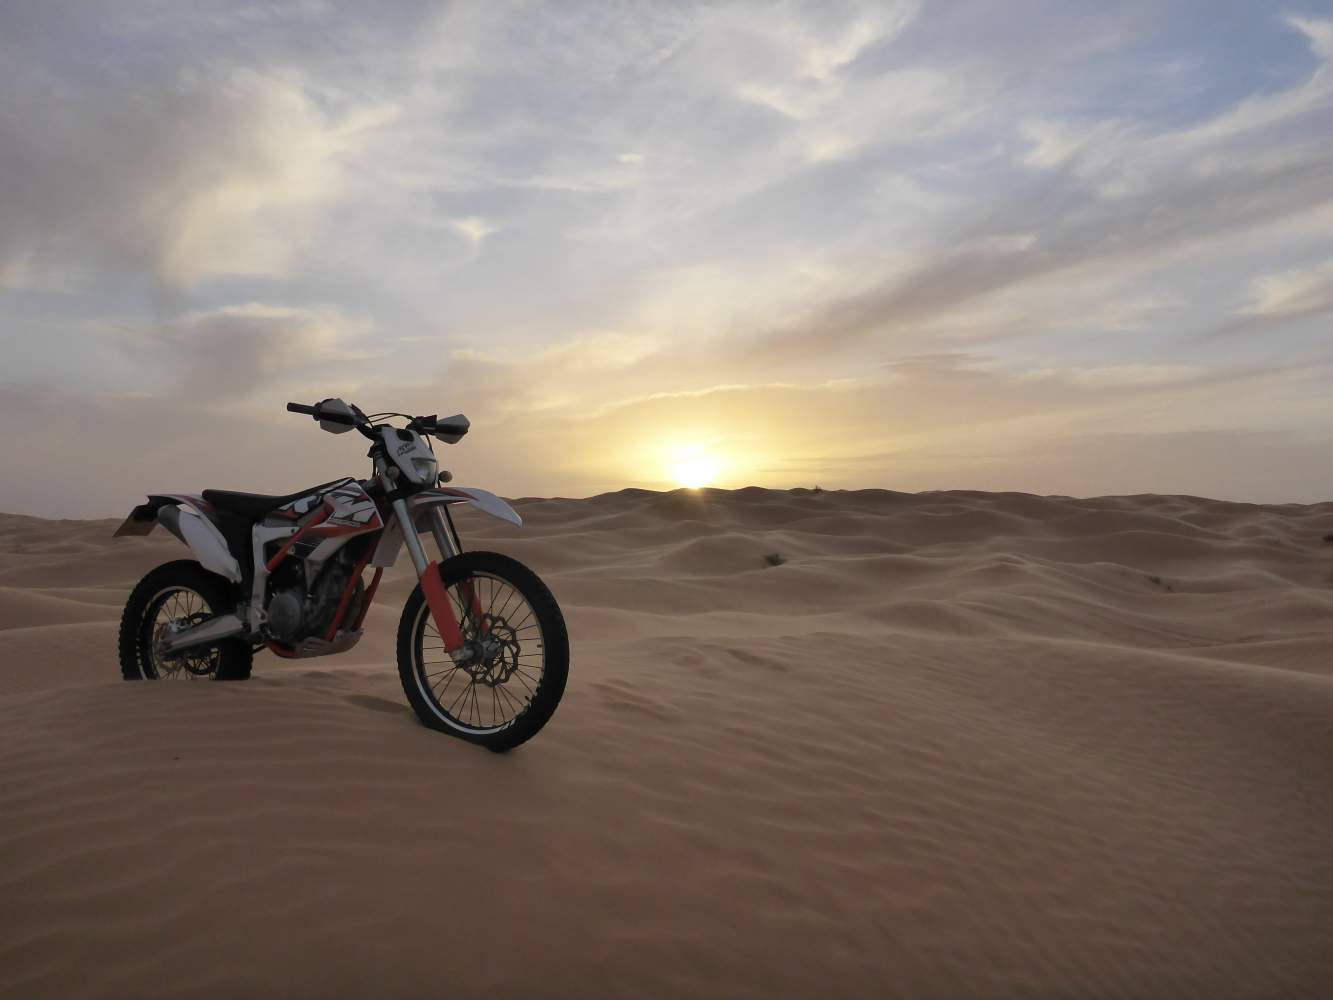 KTM Enduro Motorrad Reise Tunesien Sand Abenteuer